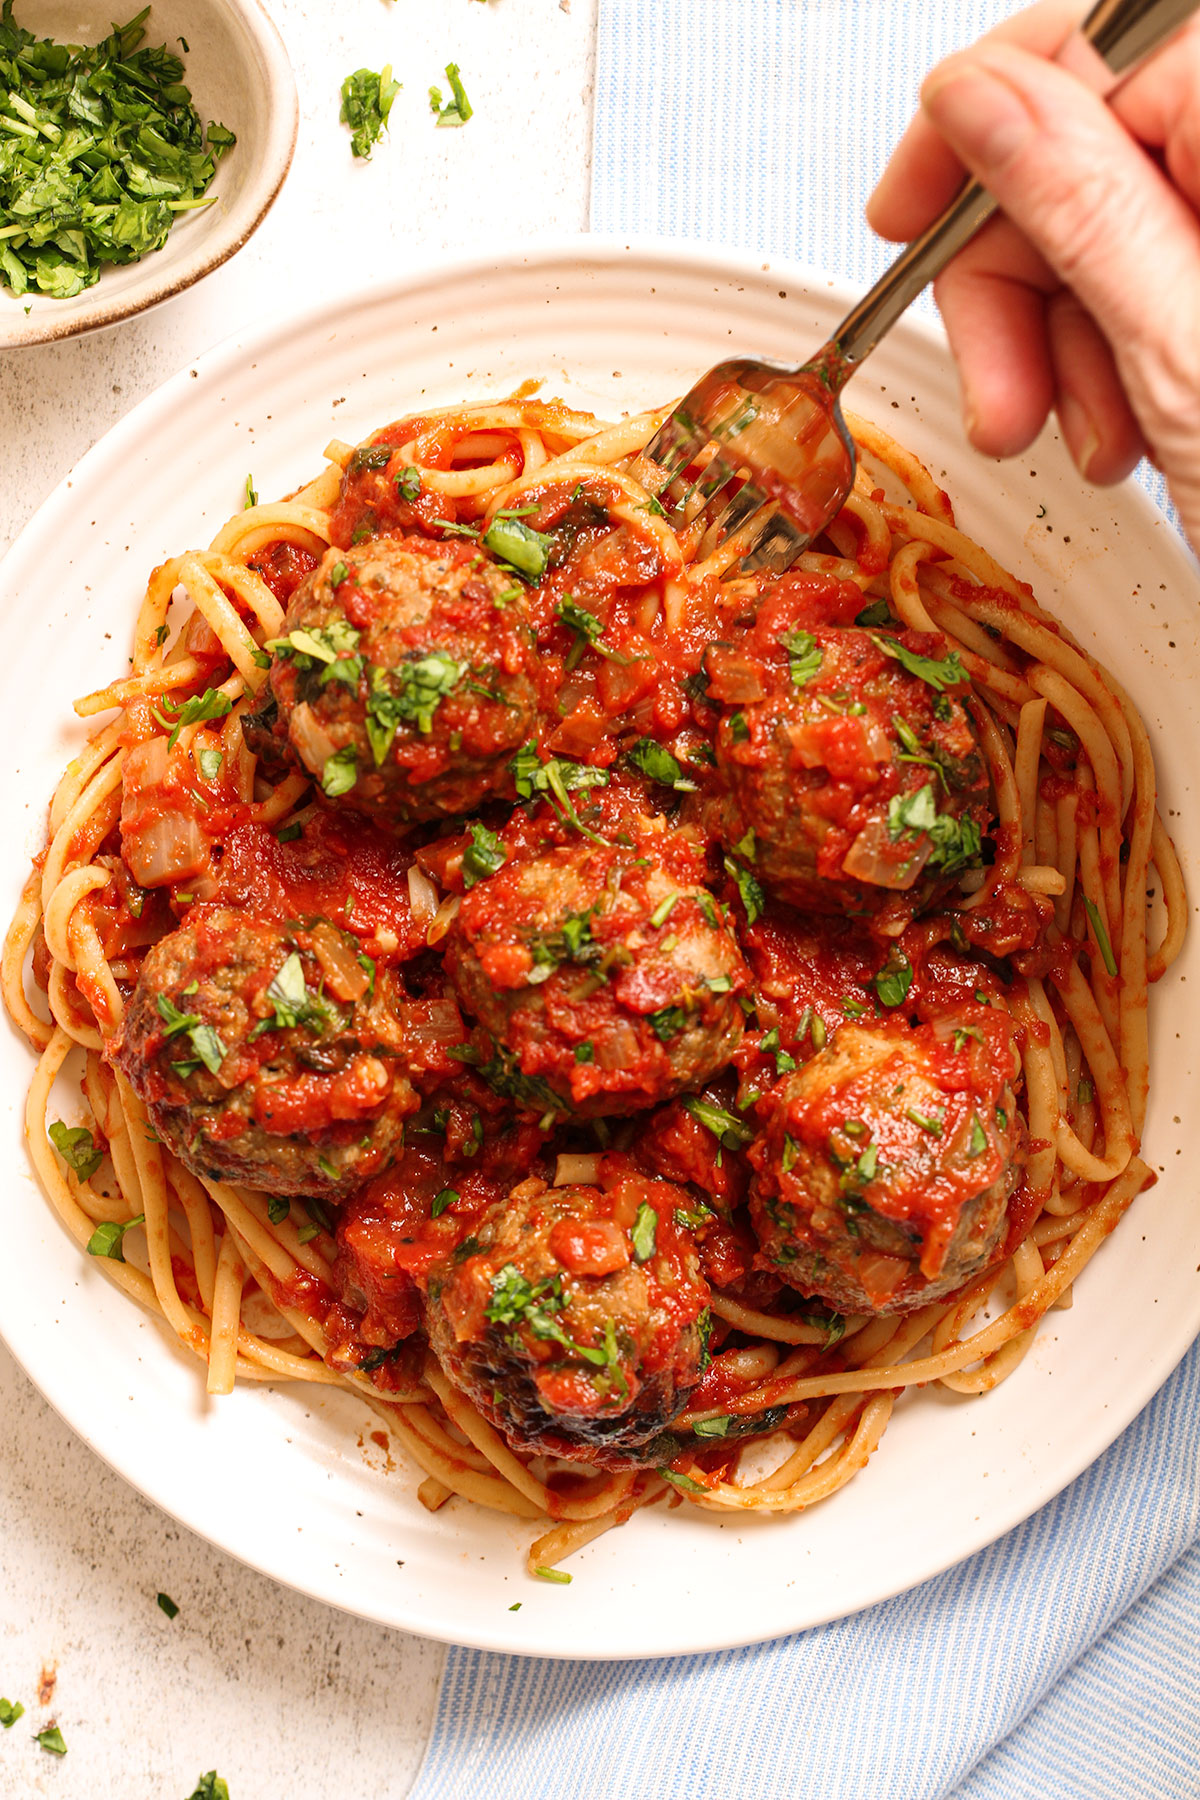 A serving of Italian Meatballs